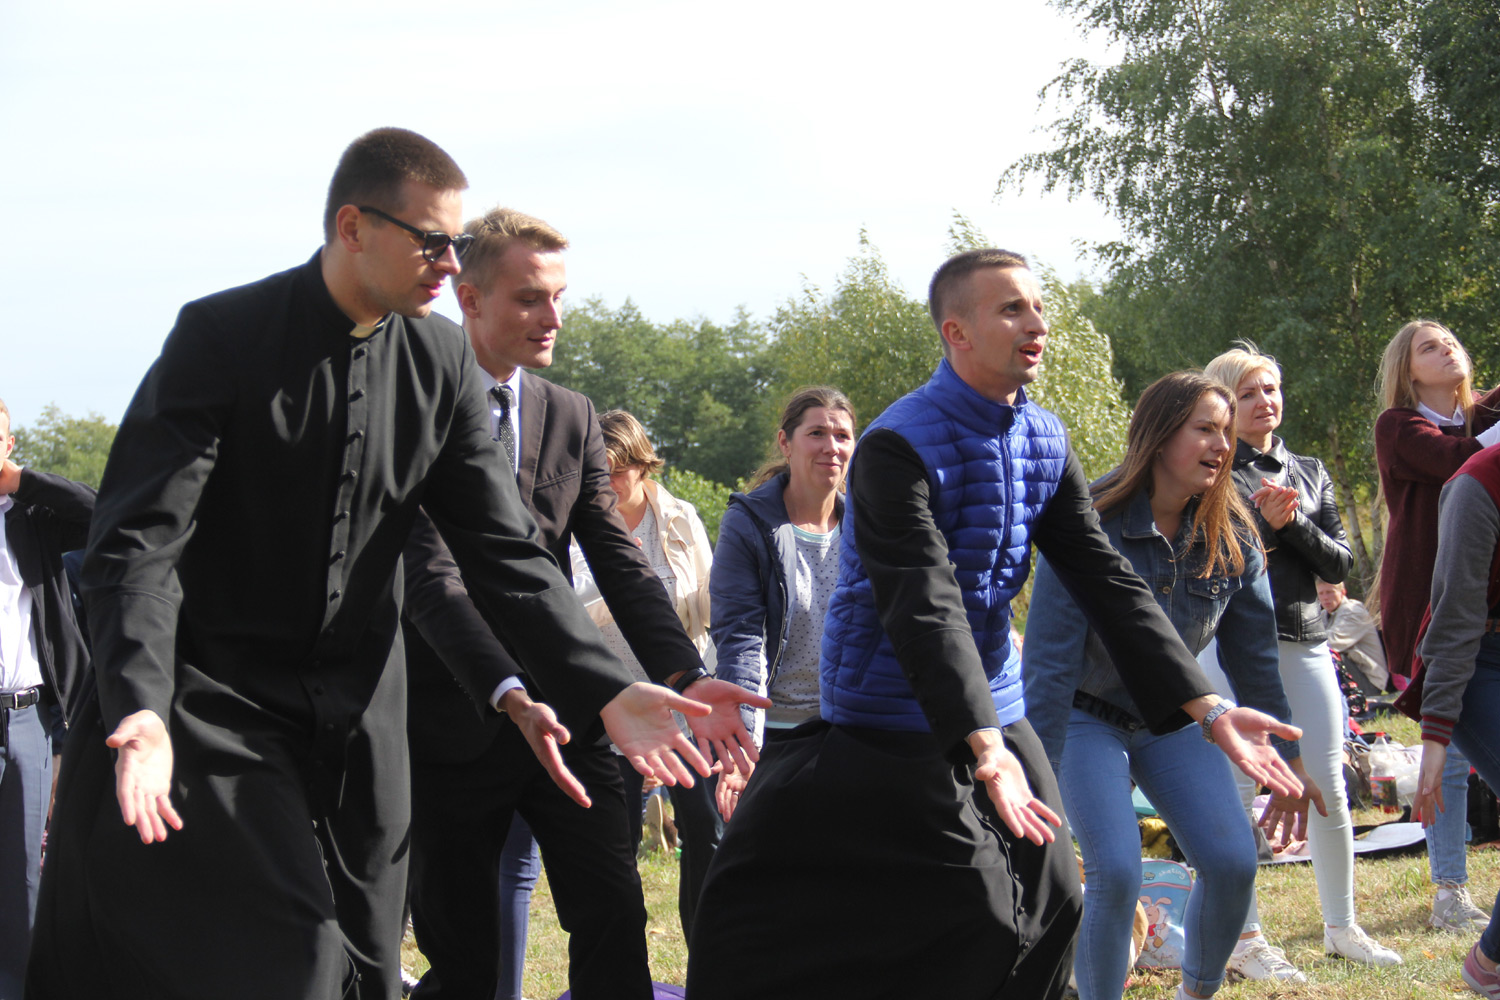 BIELORRÚSSIA: Ajuda para a formação de 25 seminaristas em Grodno